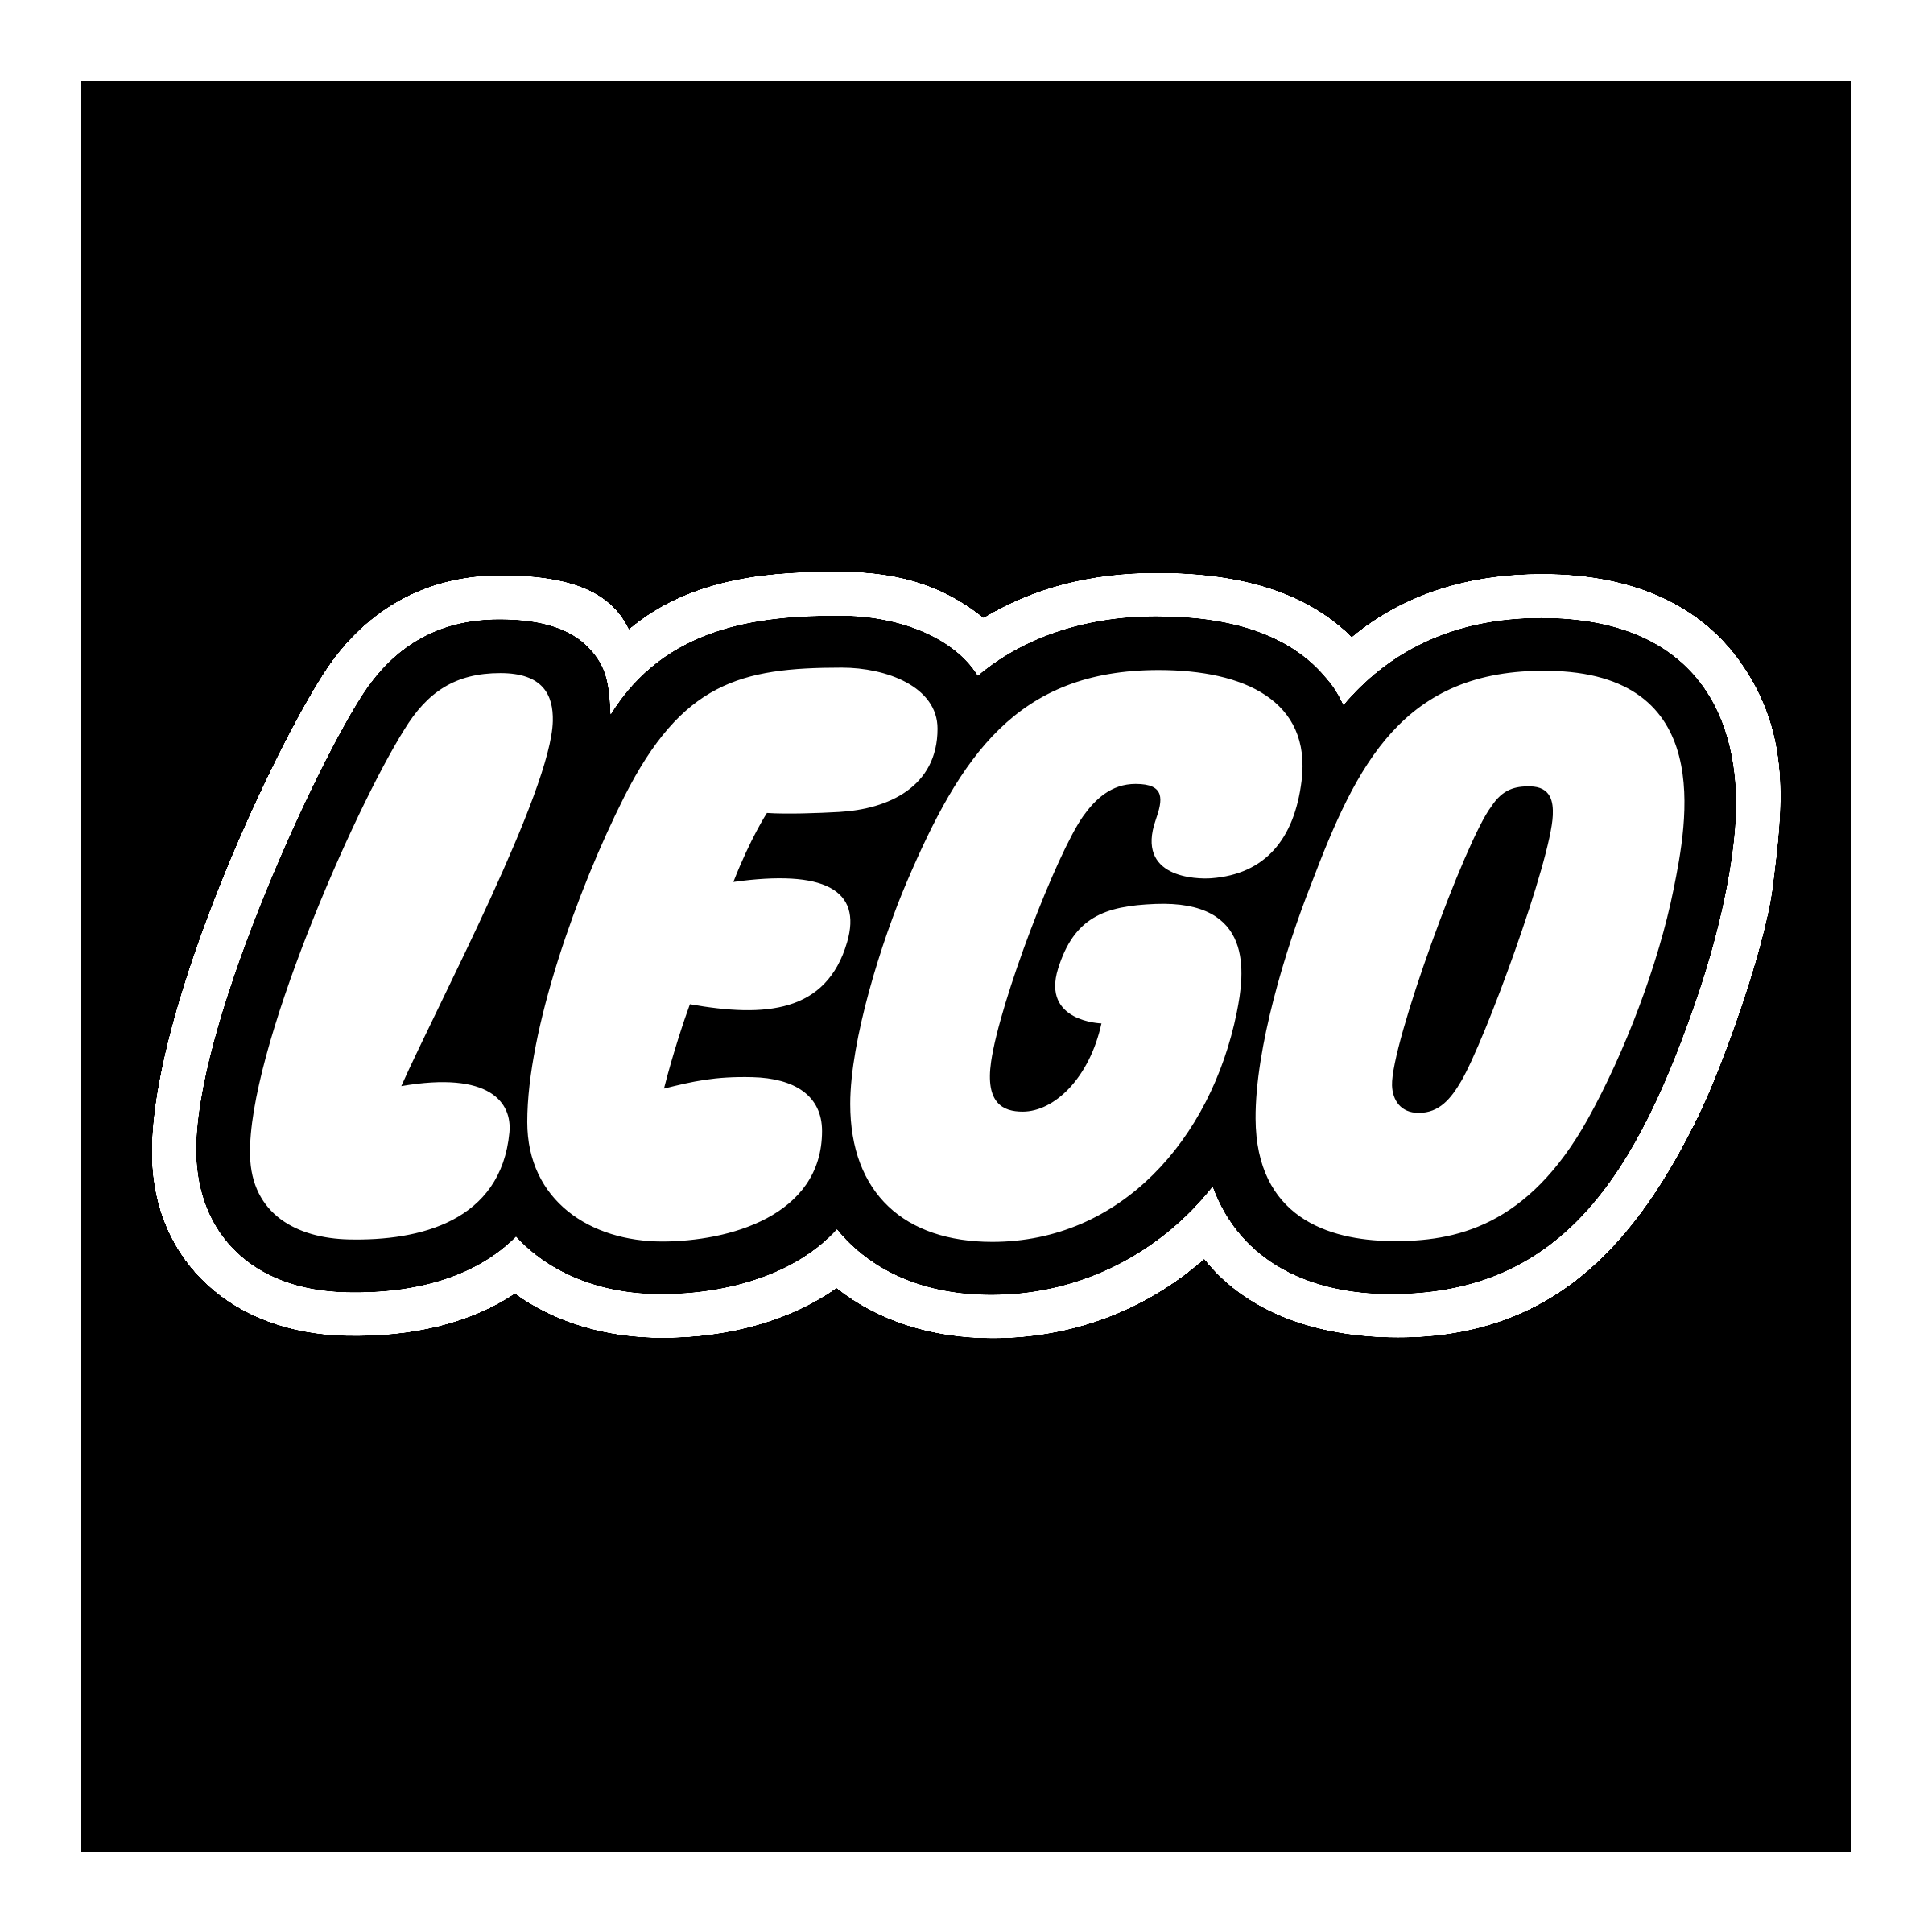 Lego Logo Png